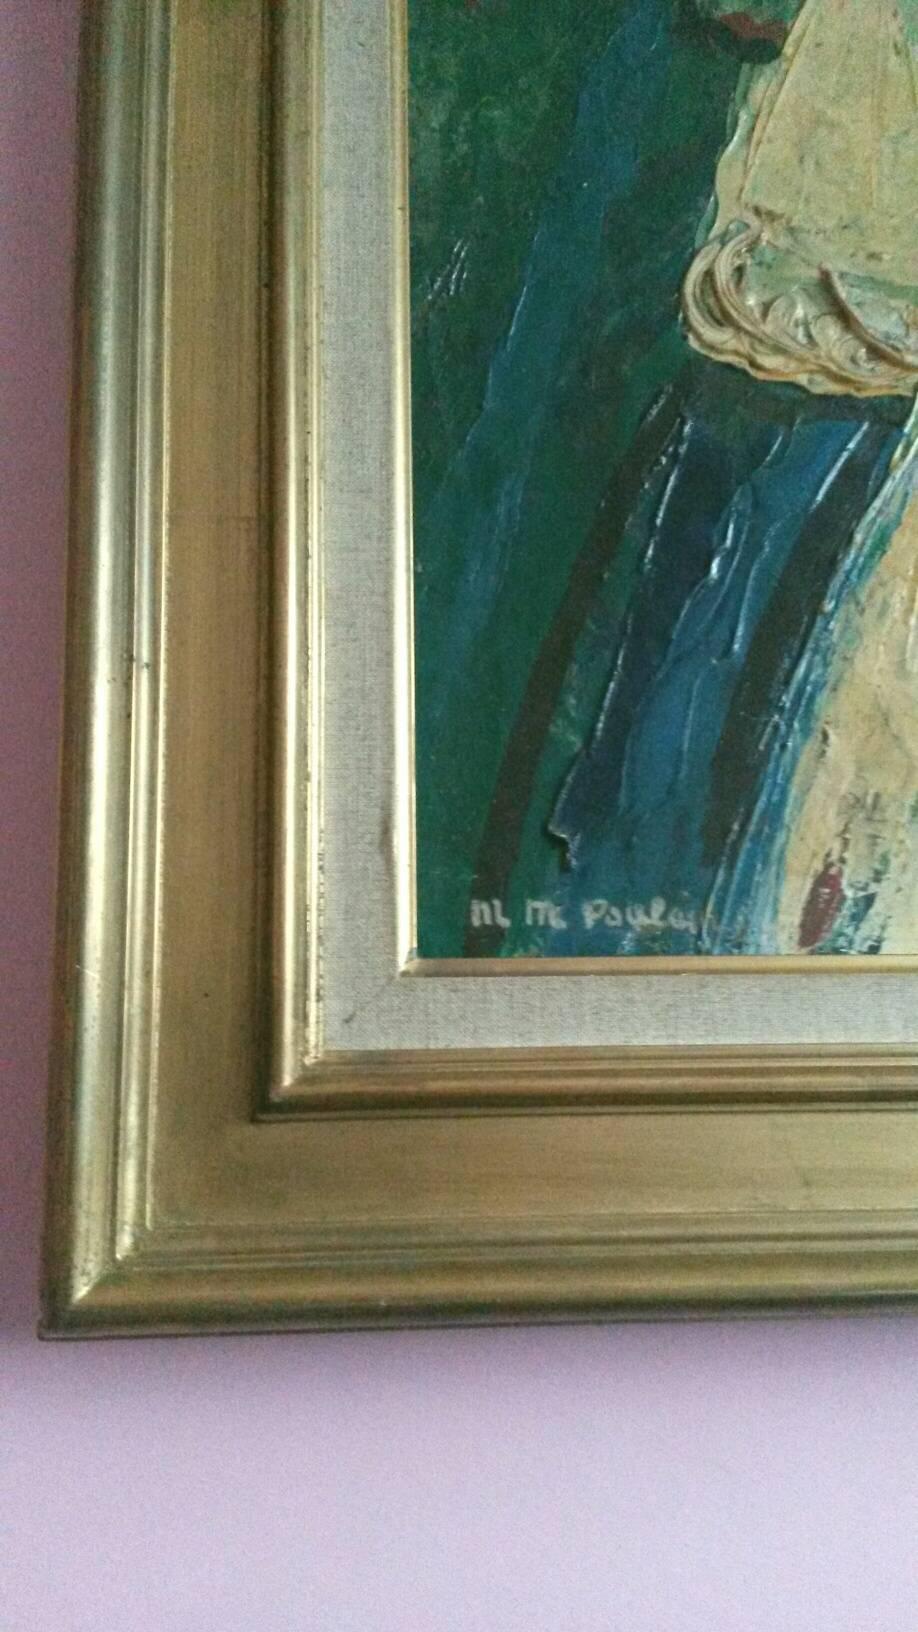 Par un célèbre artiste français transgenre,  Michel Marie Poulain (Né à Paris le 5 décembre 1906. Décédé  1991) cette rare huile sur toile   il représente la Reine et son enfant dans un style de certains des   L'œuvre de Marc Chagall.
Le tableau est